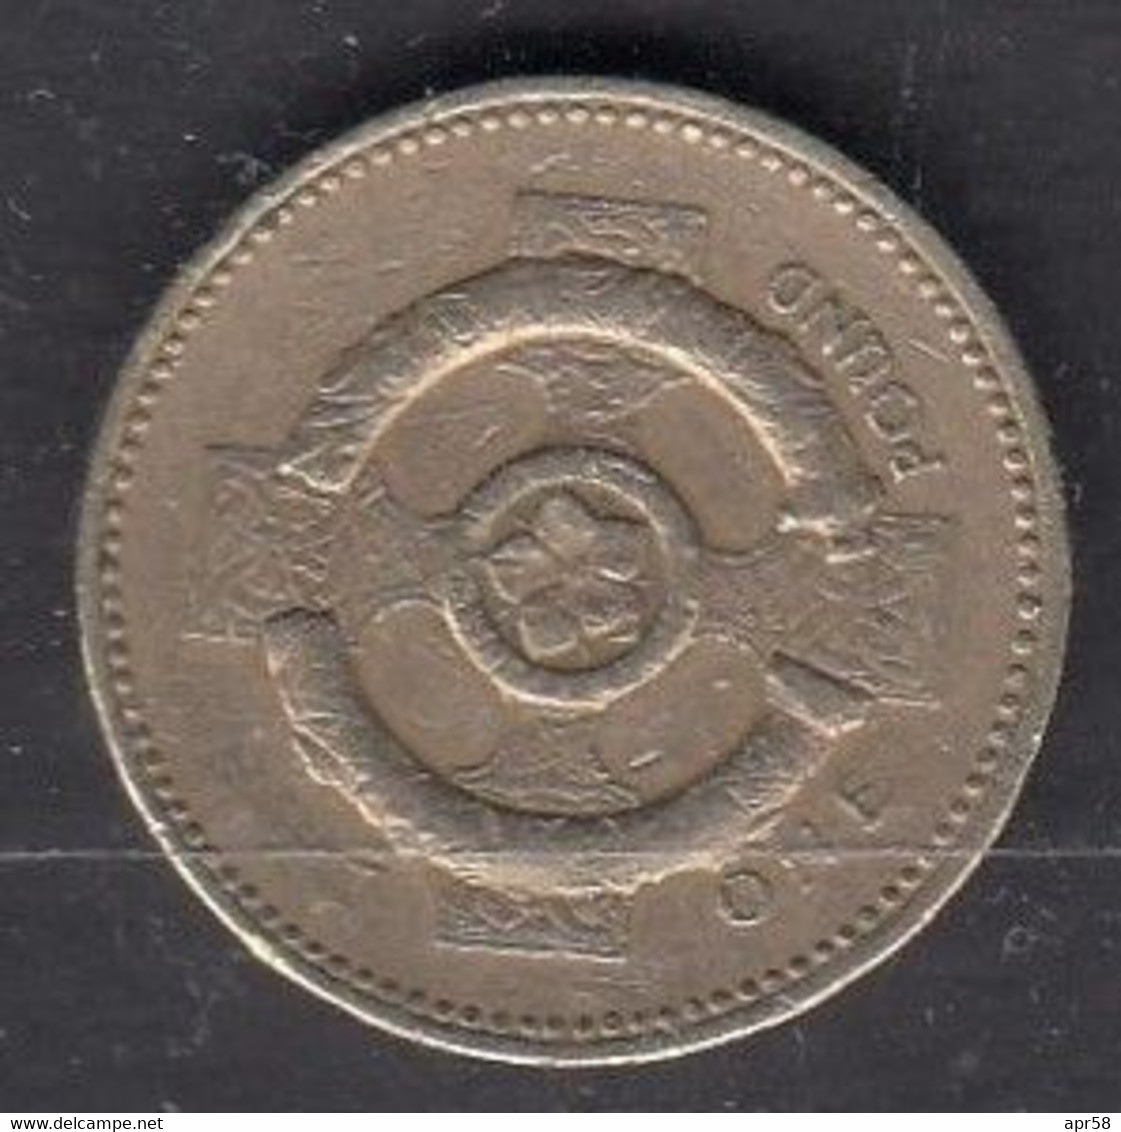 2001 £1.00 - 1 Pound